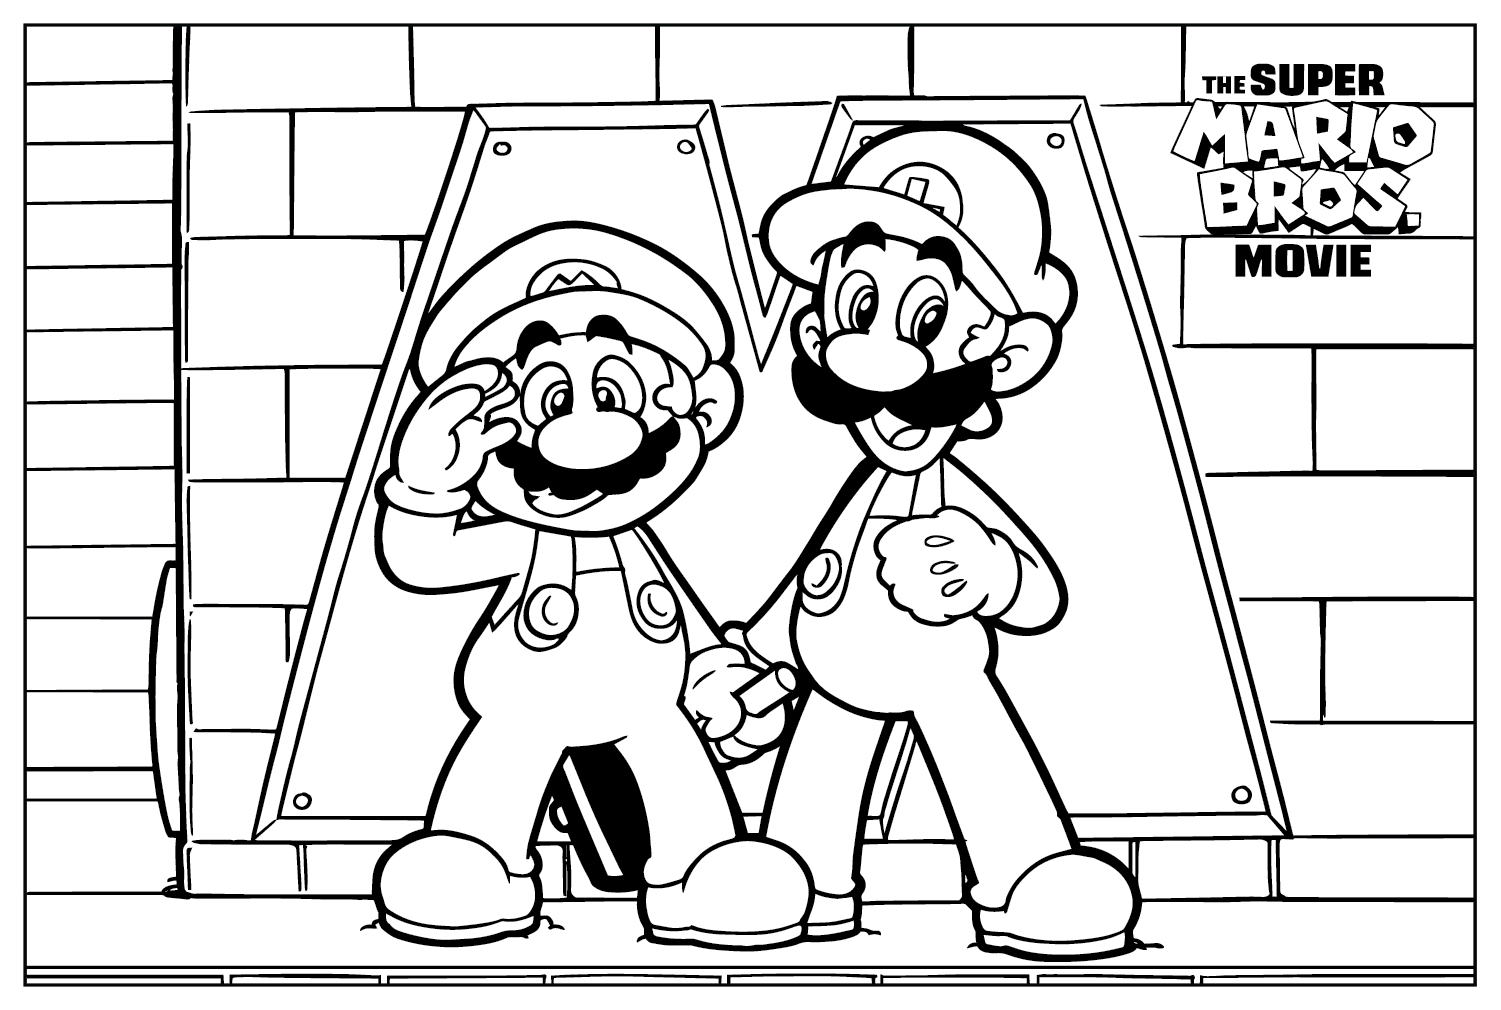 Pagina a colori di Mario e Luigi dal film Super Mario Bros.